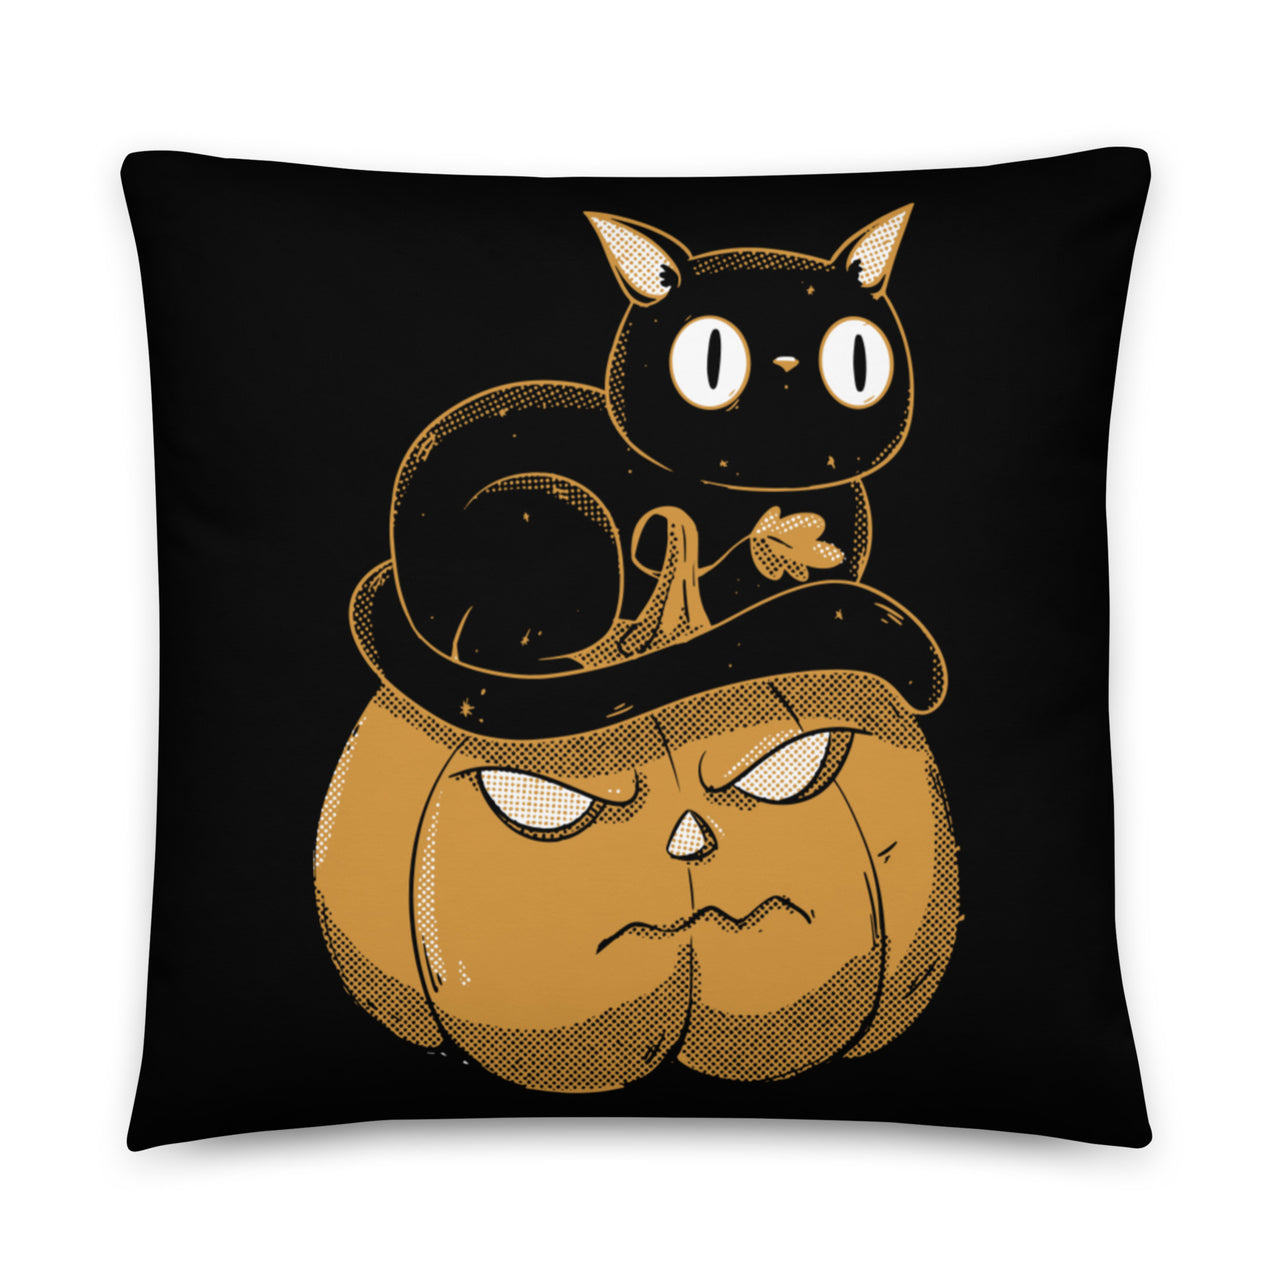 Black Cat on Halloween Pumpkin Pillow, Halloween Throw Pillow